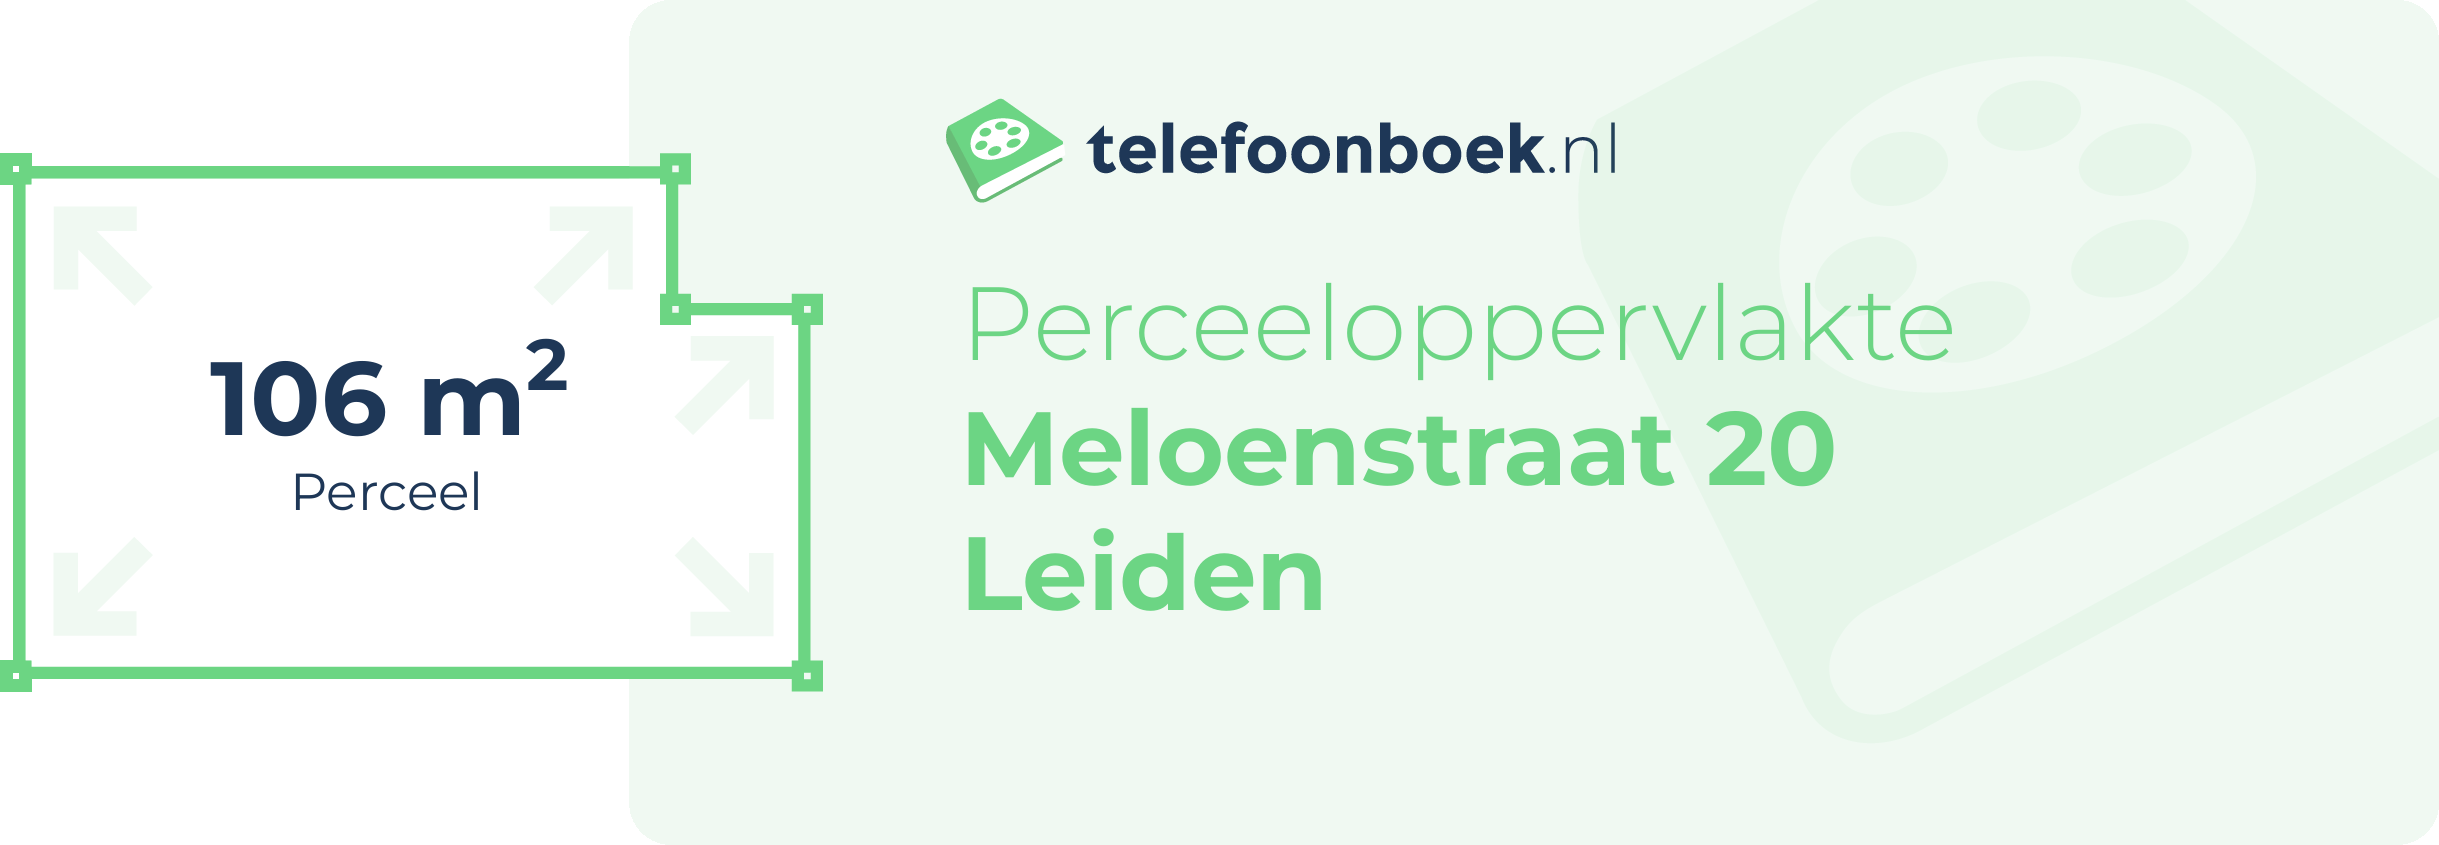 Perceeloppervlakte Meloenstraat 20 Leiden